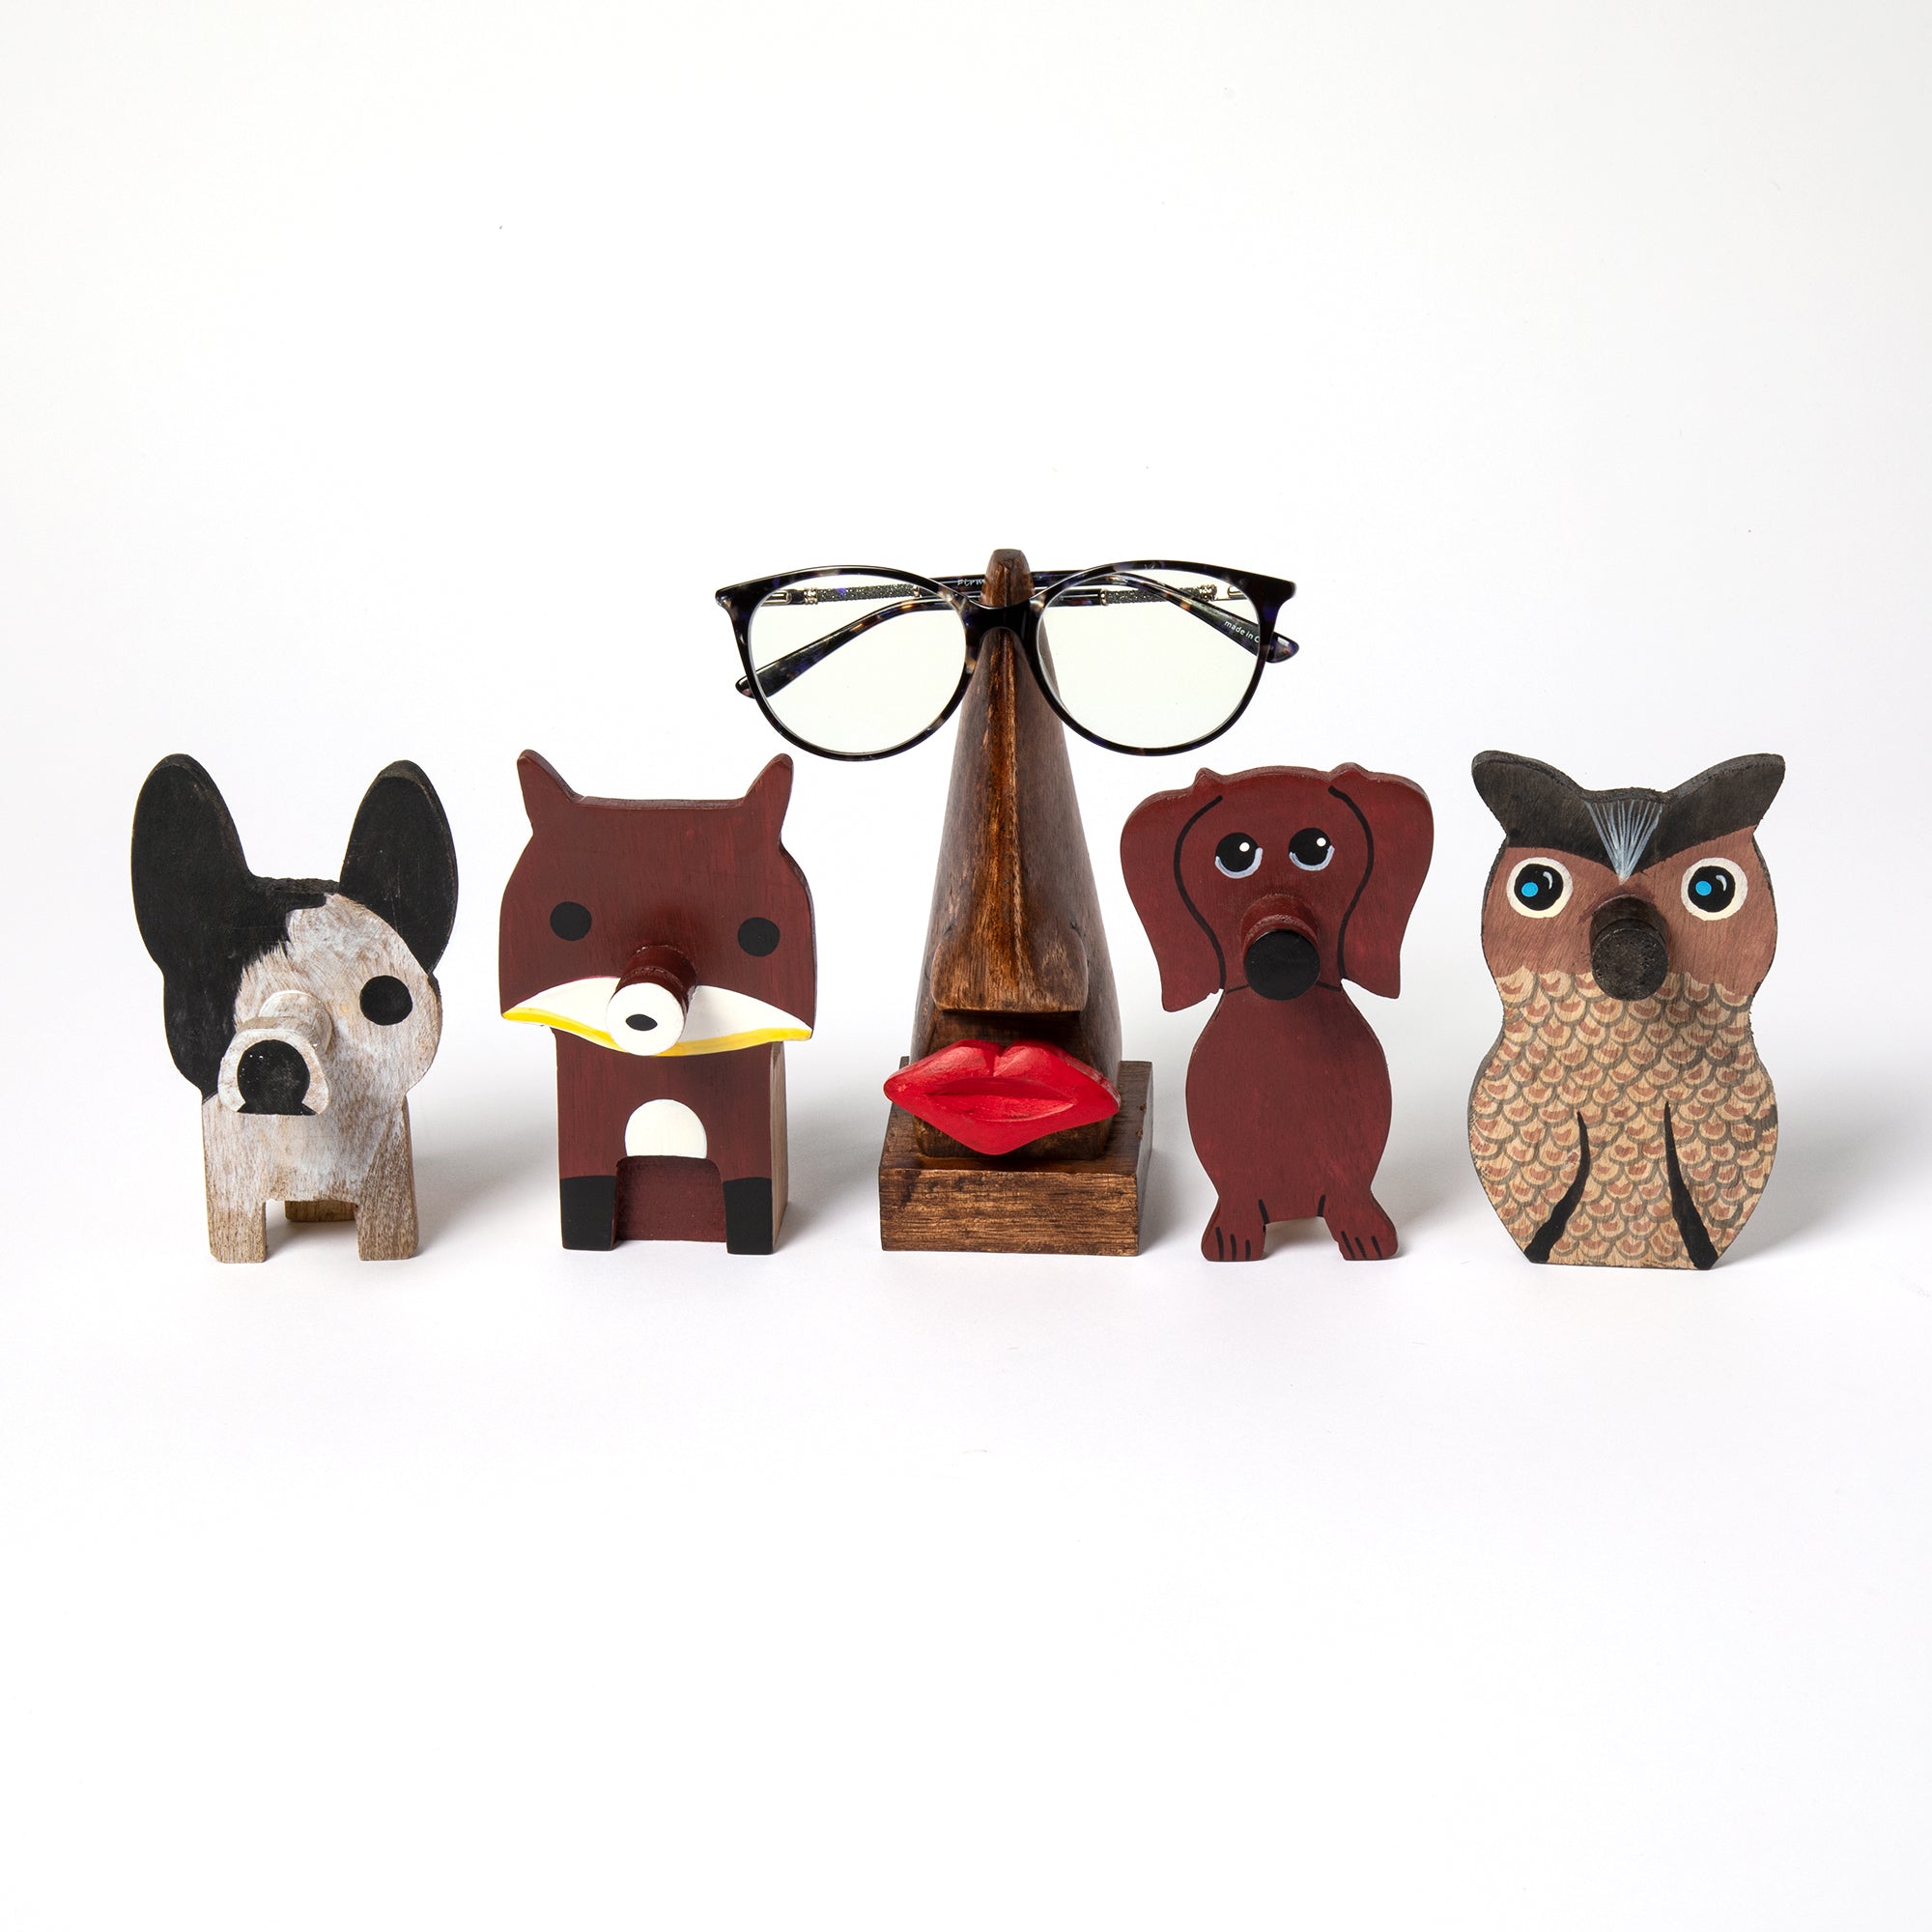 Animal Noses Wooden Glasses Holder - Owl